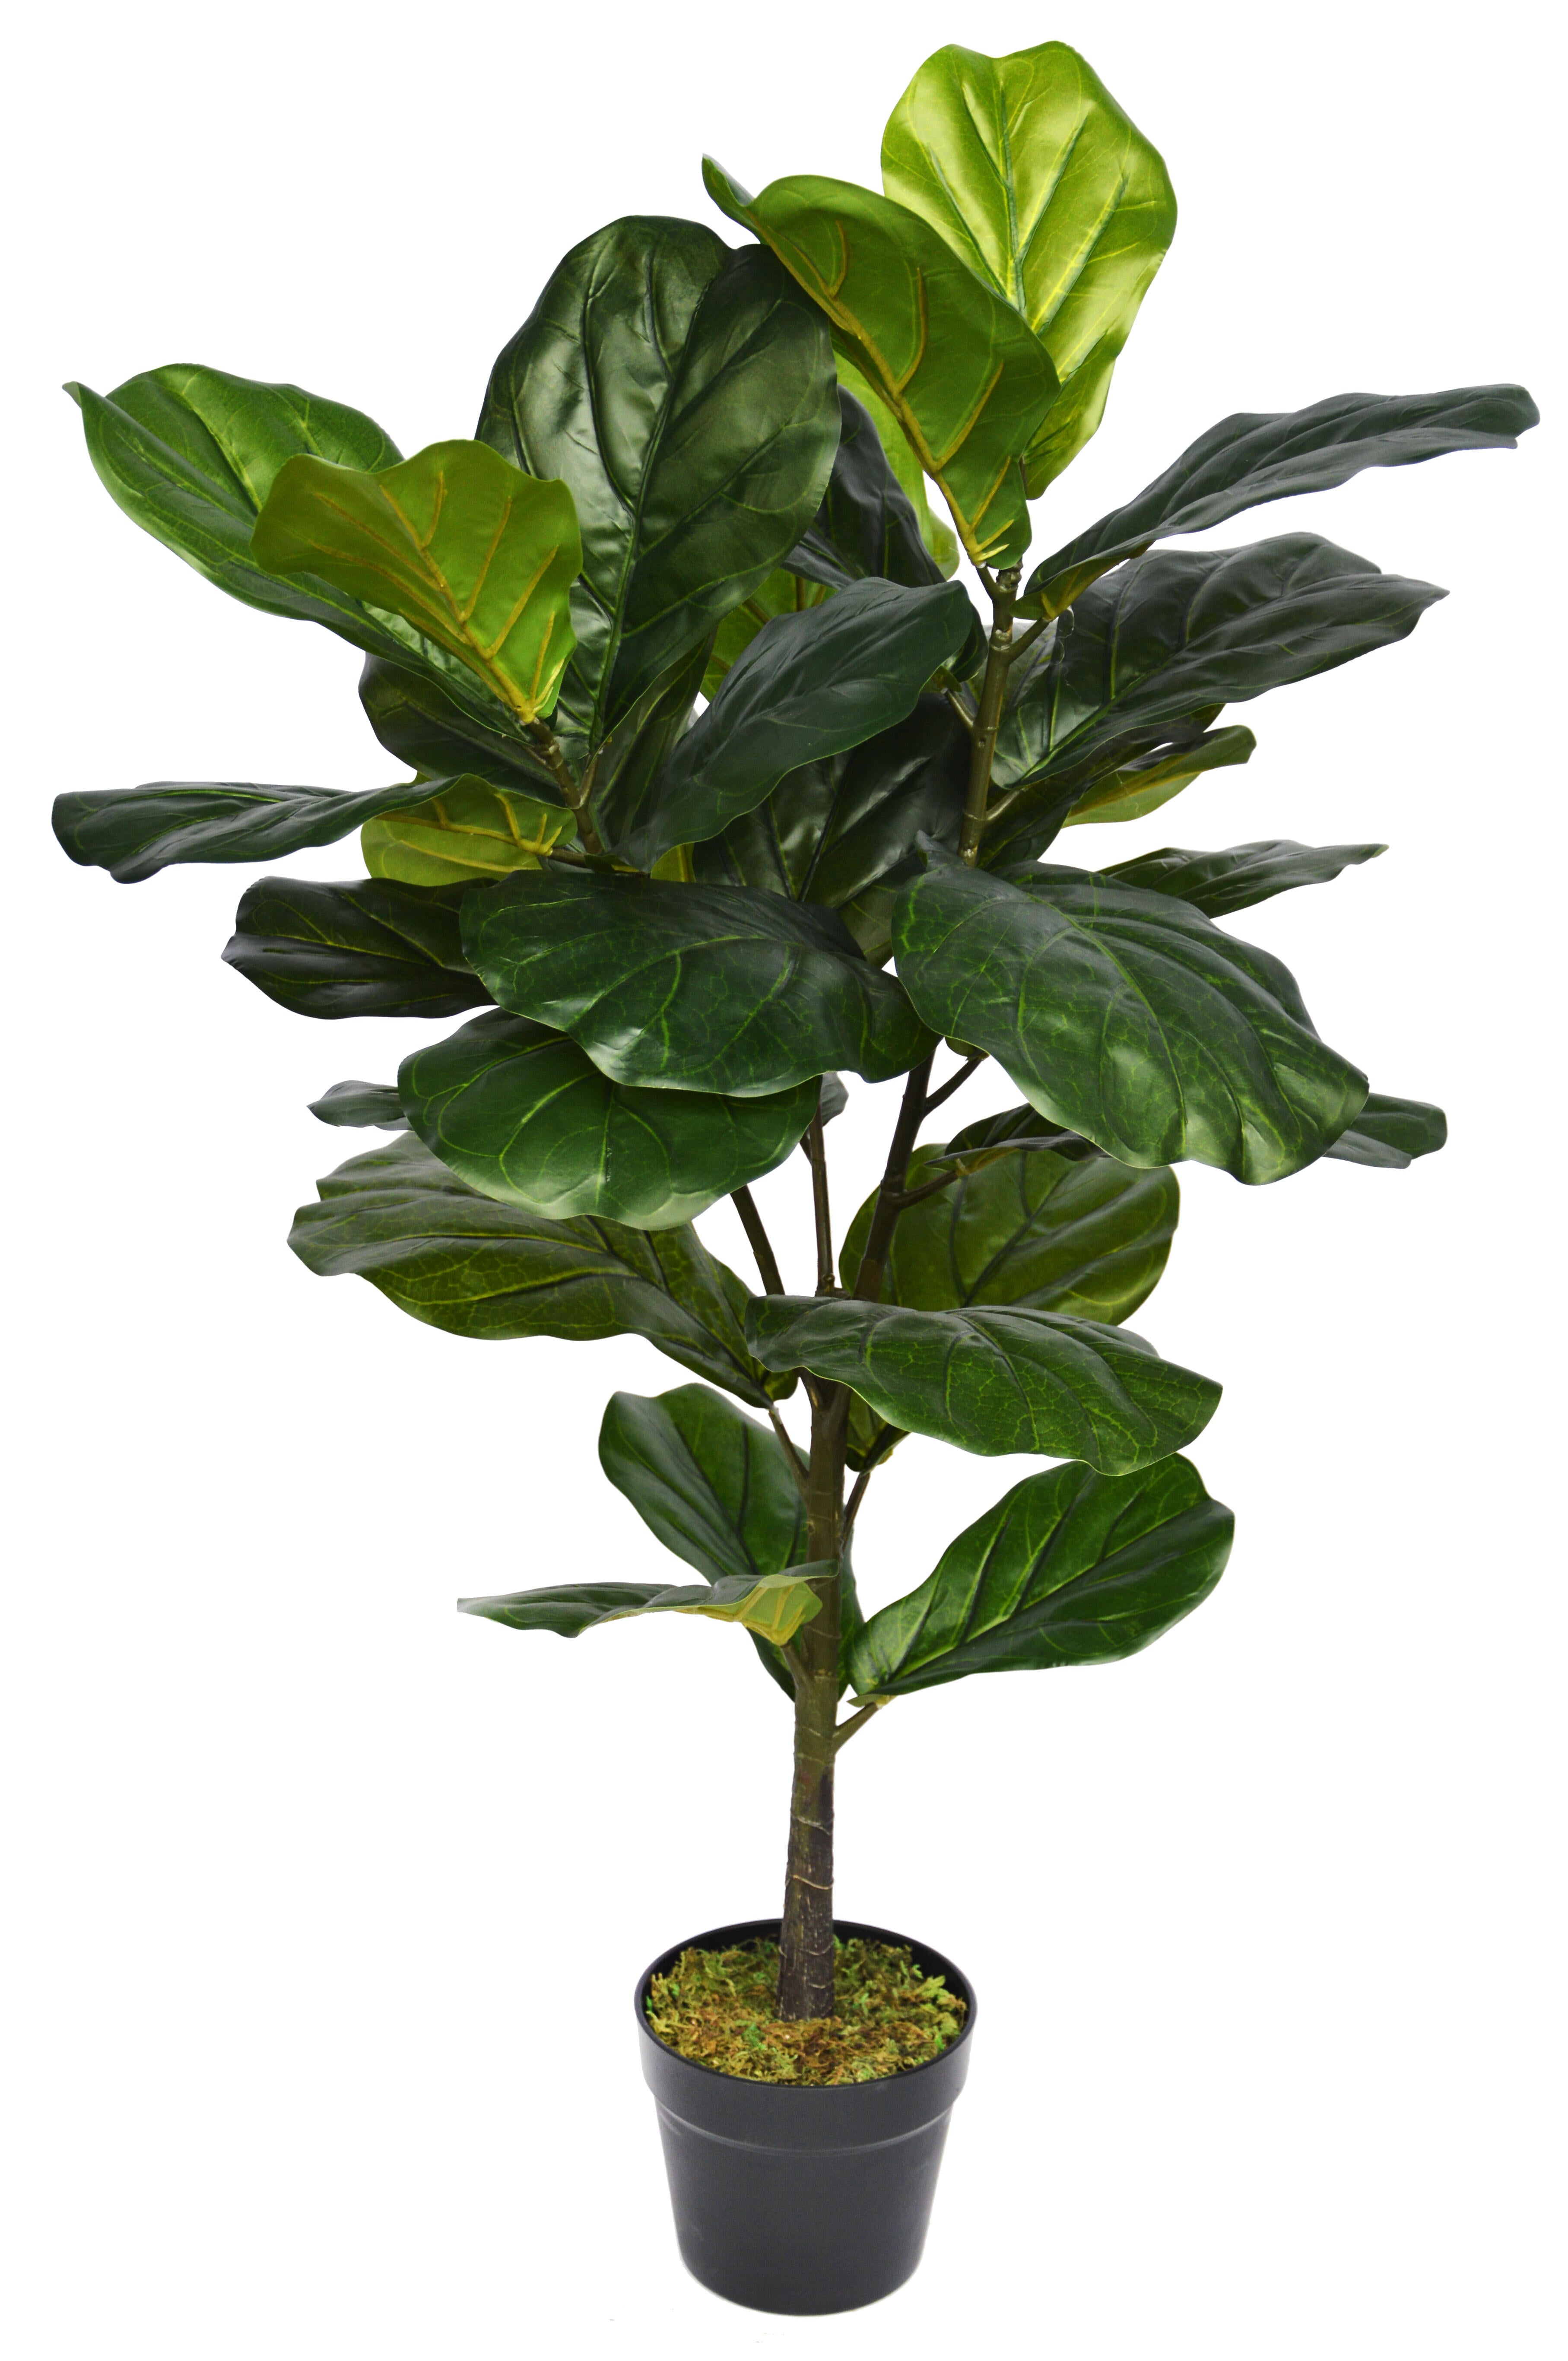 Planta artificial ficus lyrata de 100 cm de altura en maceta de 16 cm